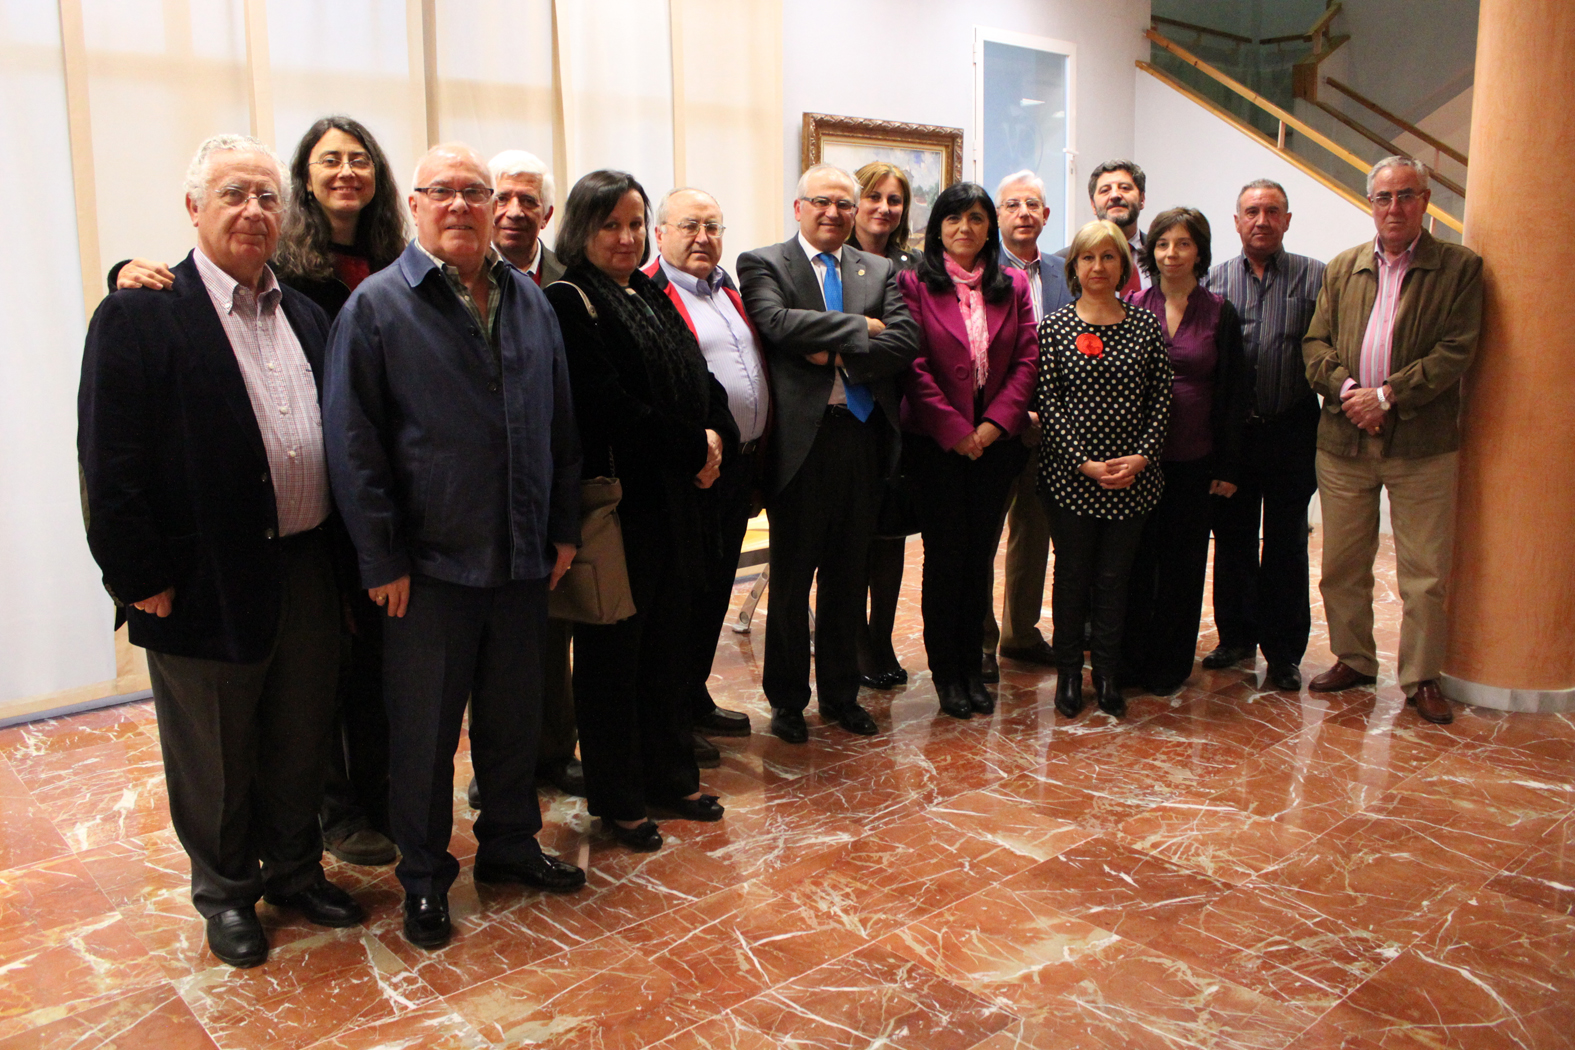 Representantes institucionales y miembros de la Cátedra de Flamenco Juanito Valderrama.